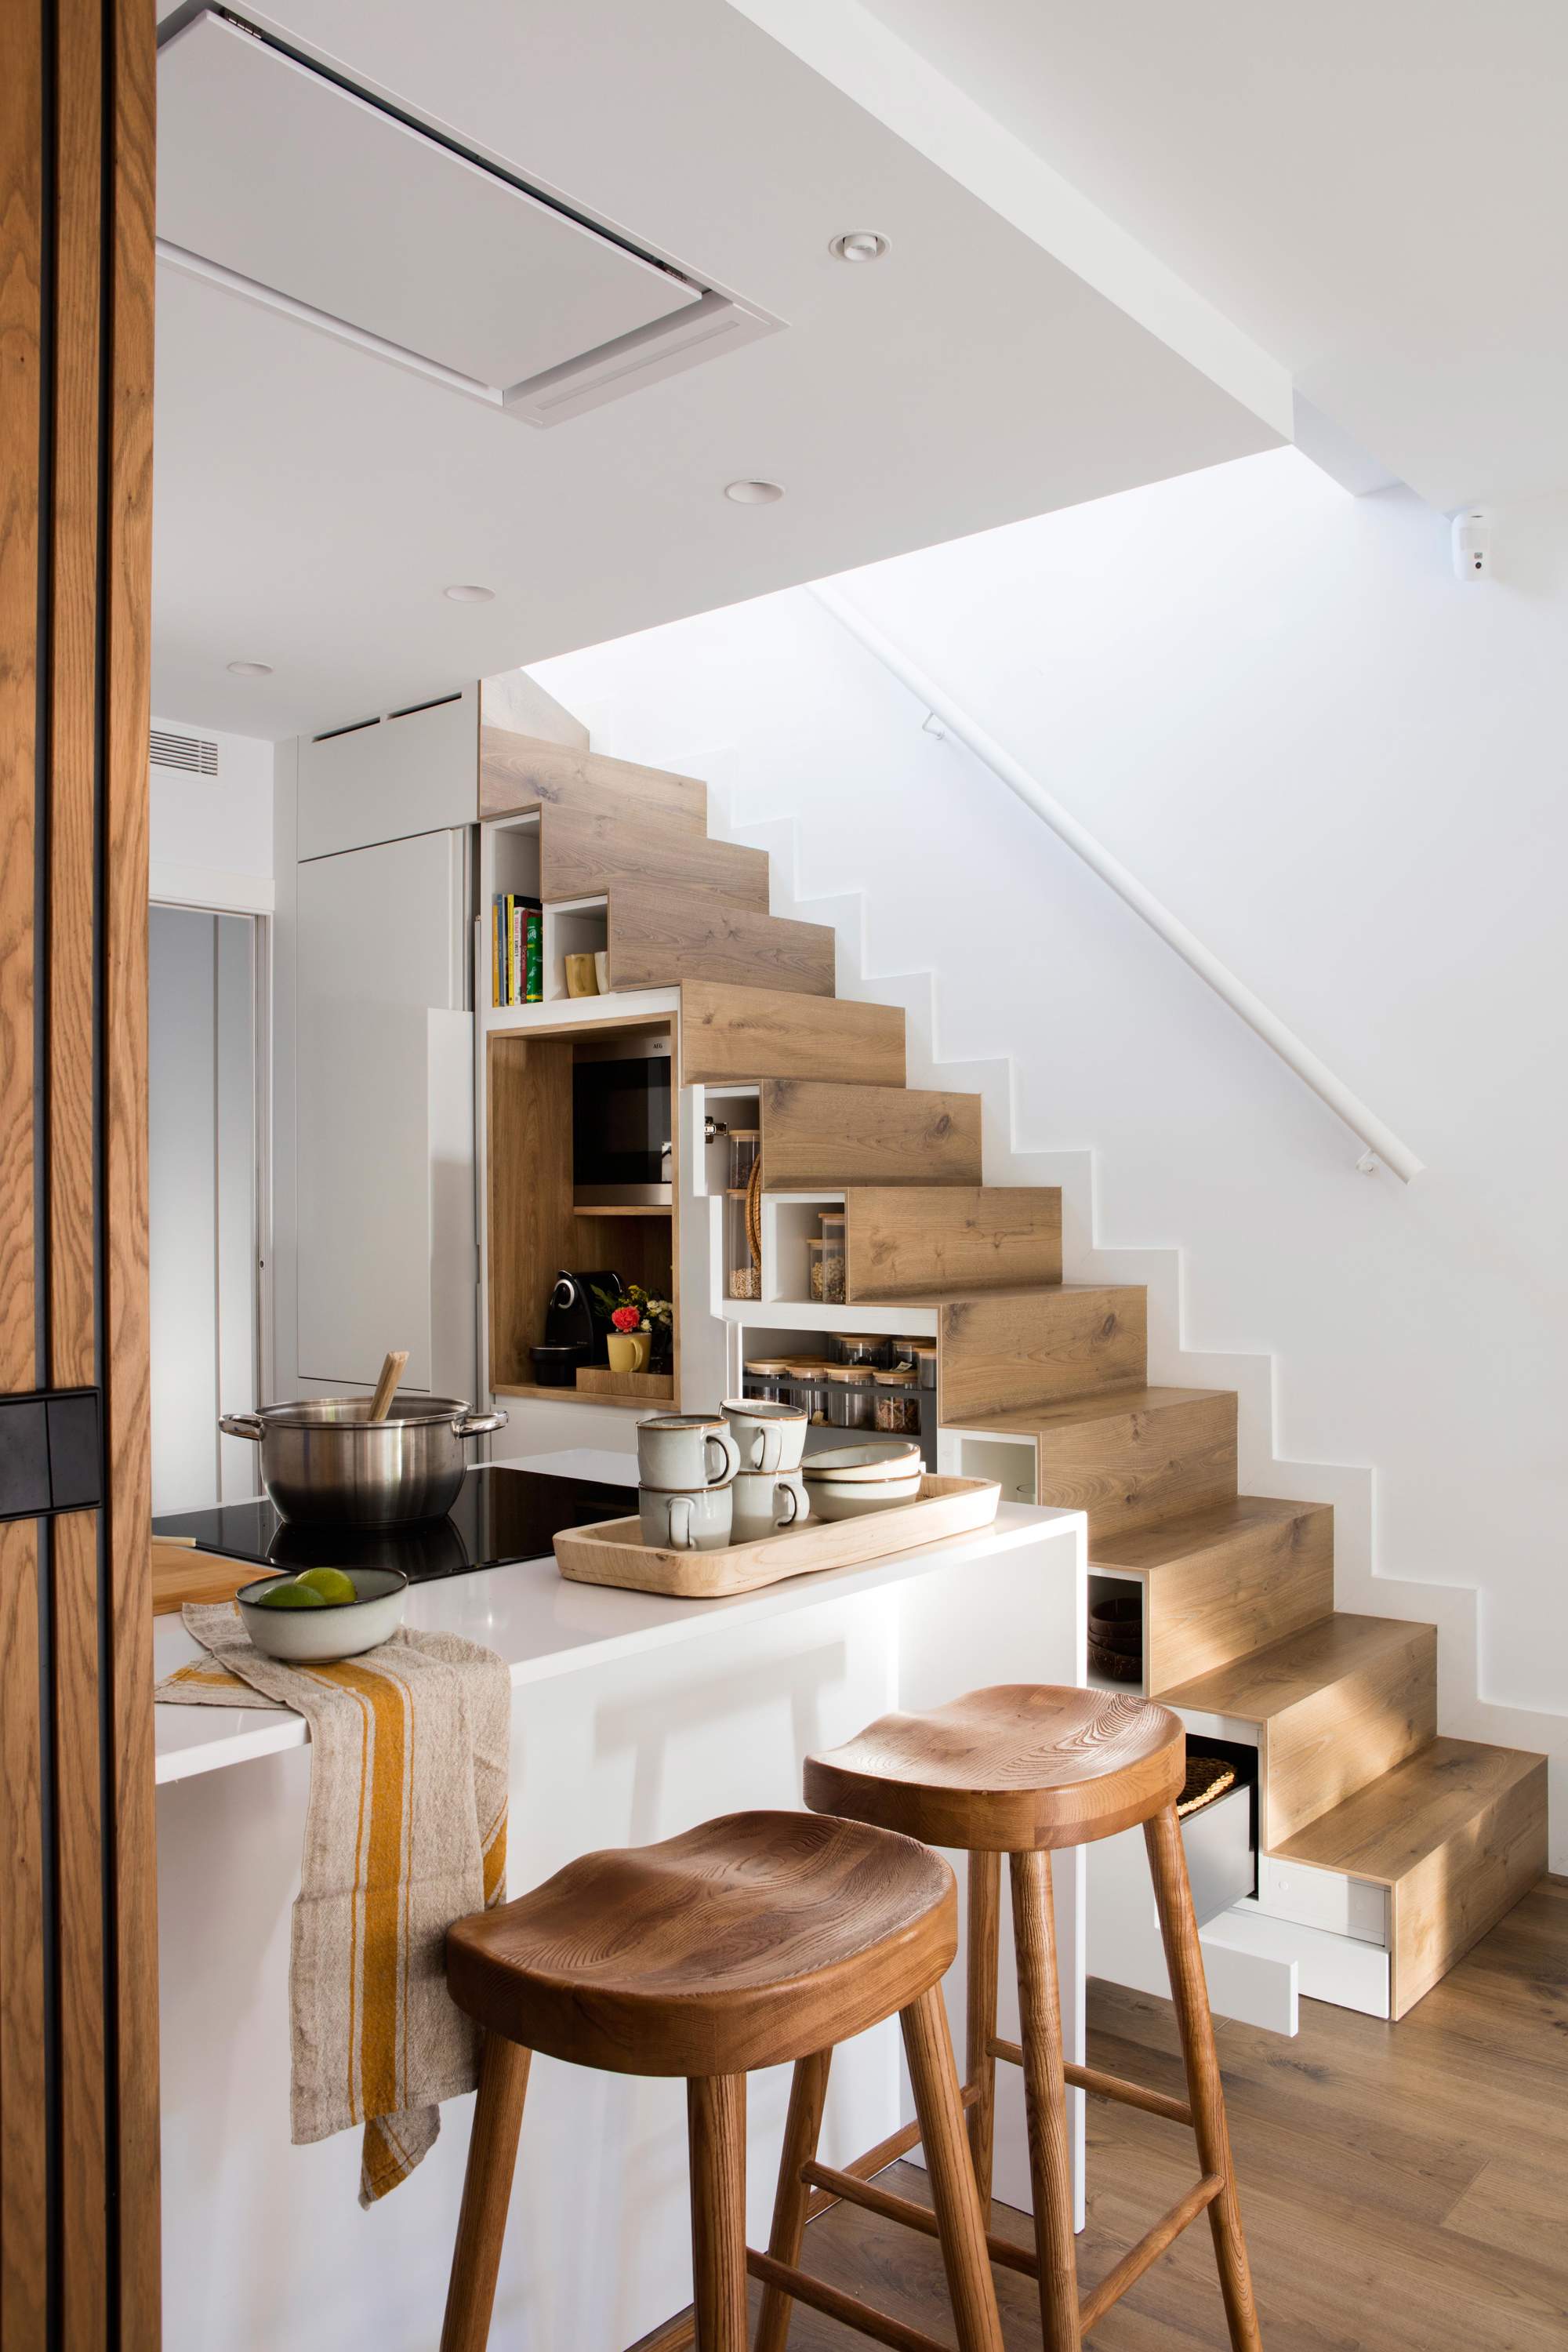 Cocina con espacio extra bajo escalera